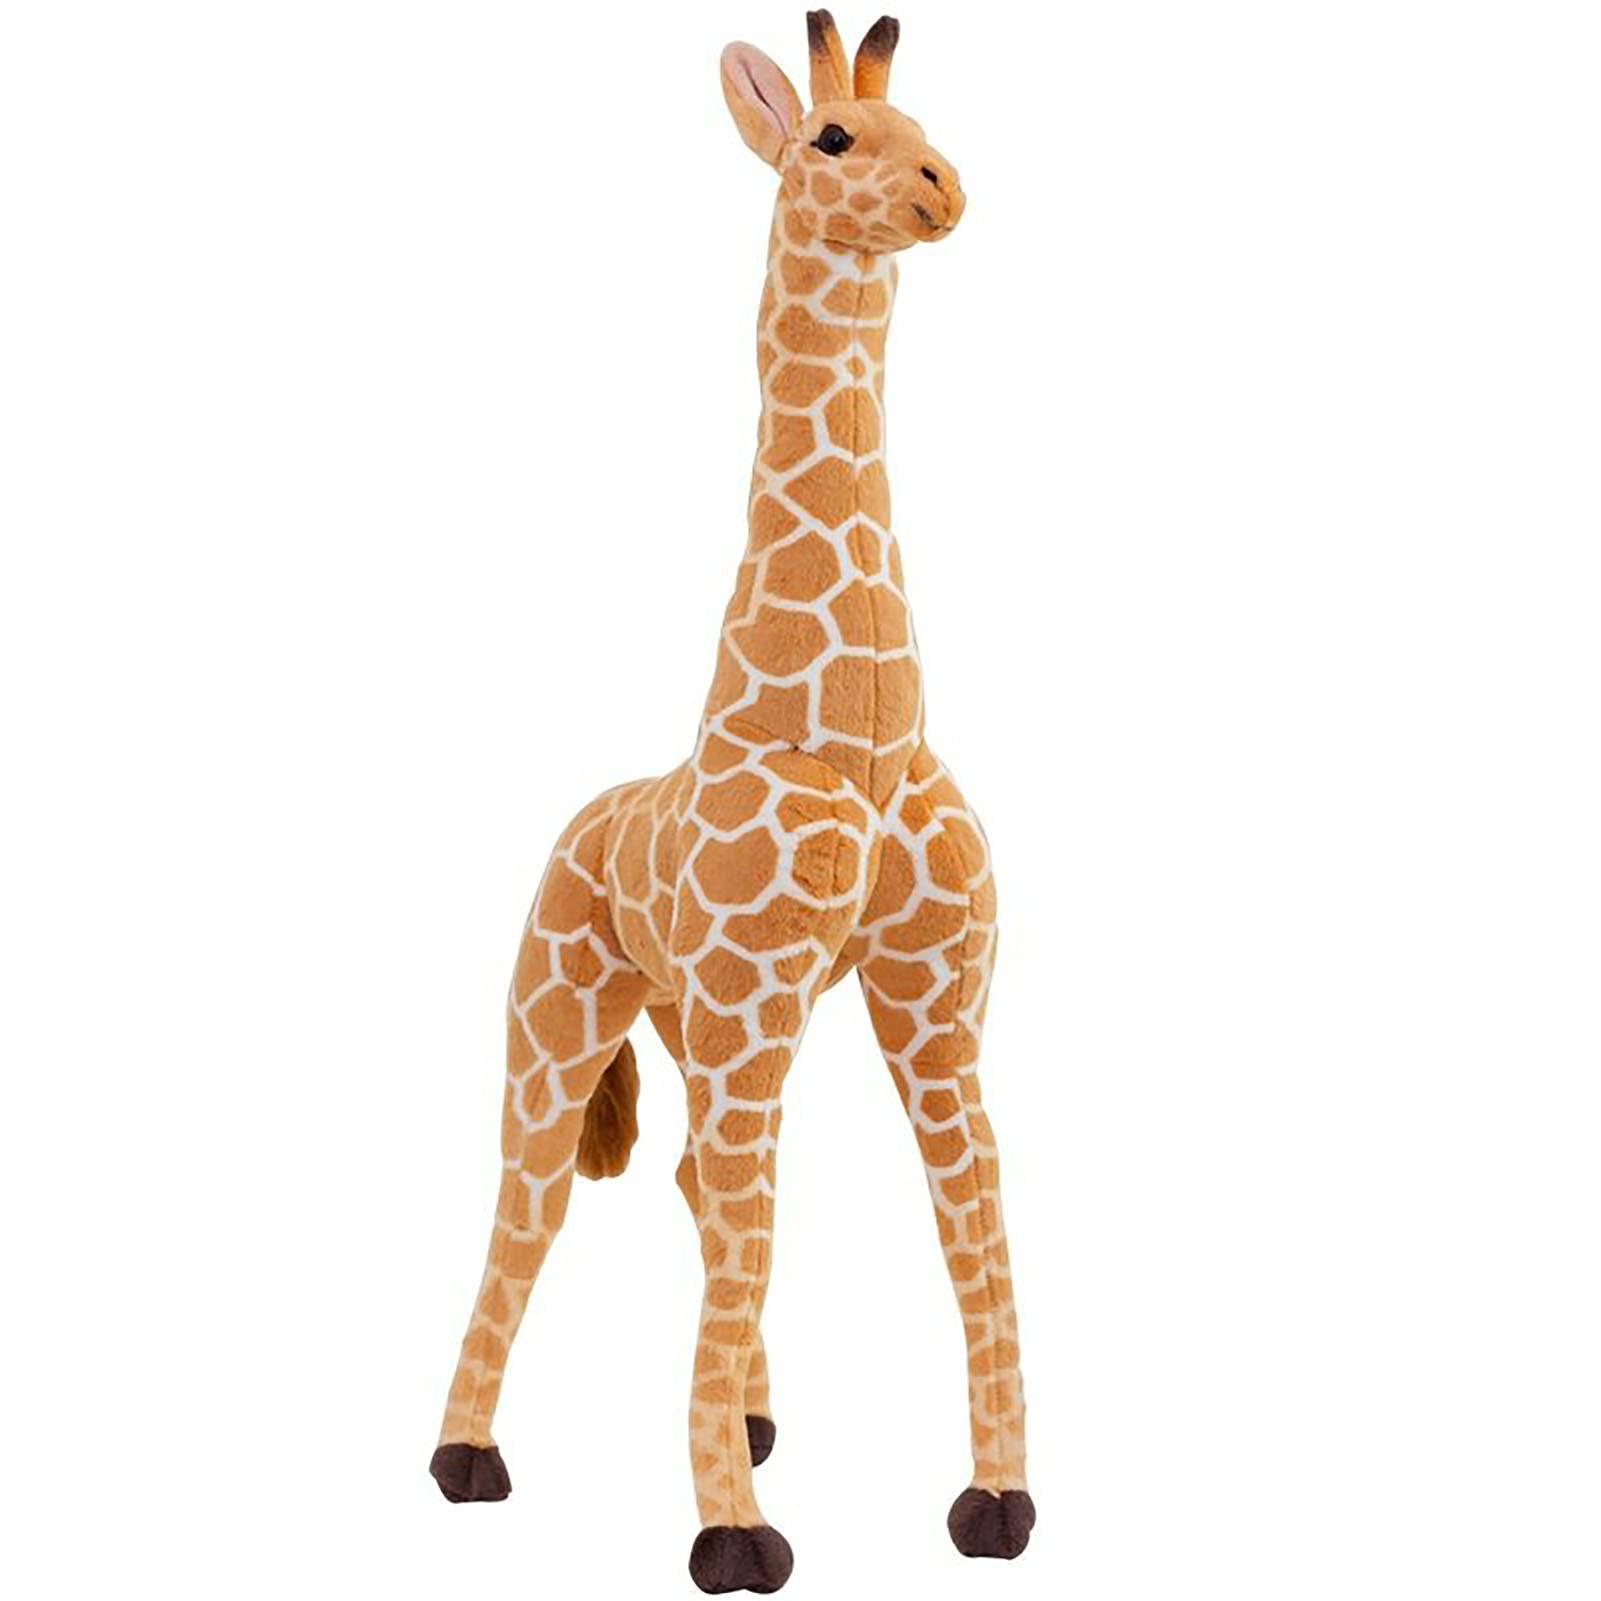 Hengqiyuan Riesen Plüsch Giraffe Plüschtier Geschenk Kinder Spielzeug XXL Braun Gelb Plüsch 140cm